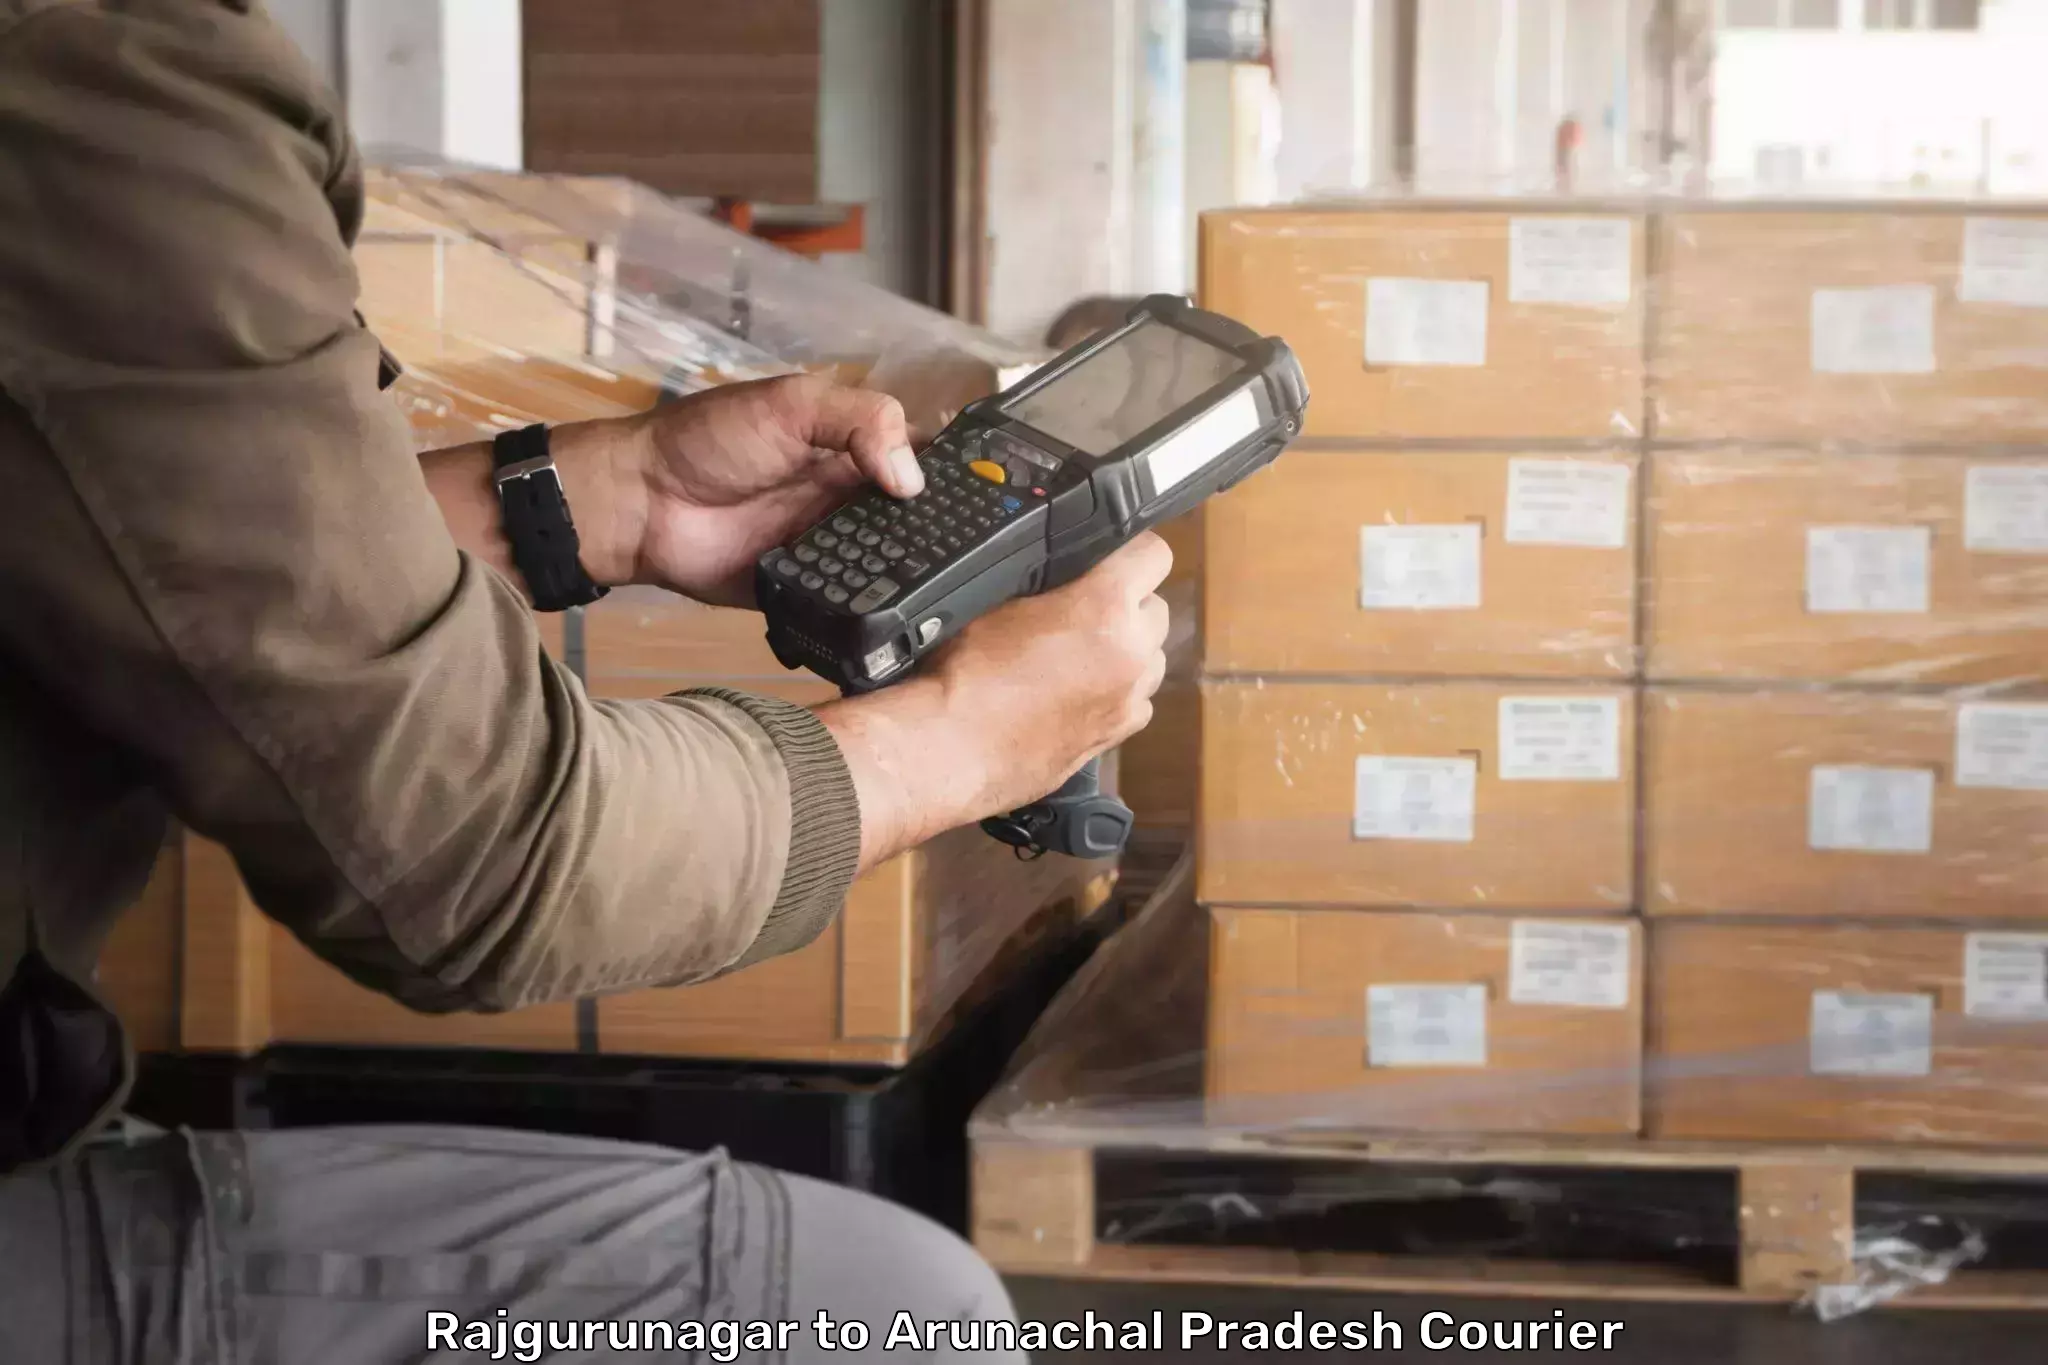 Courier service efficiency Rajgurunagar to Arunachal Pradesh